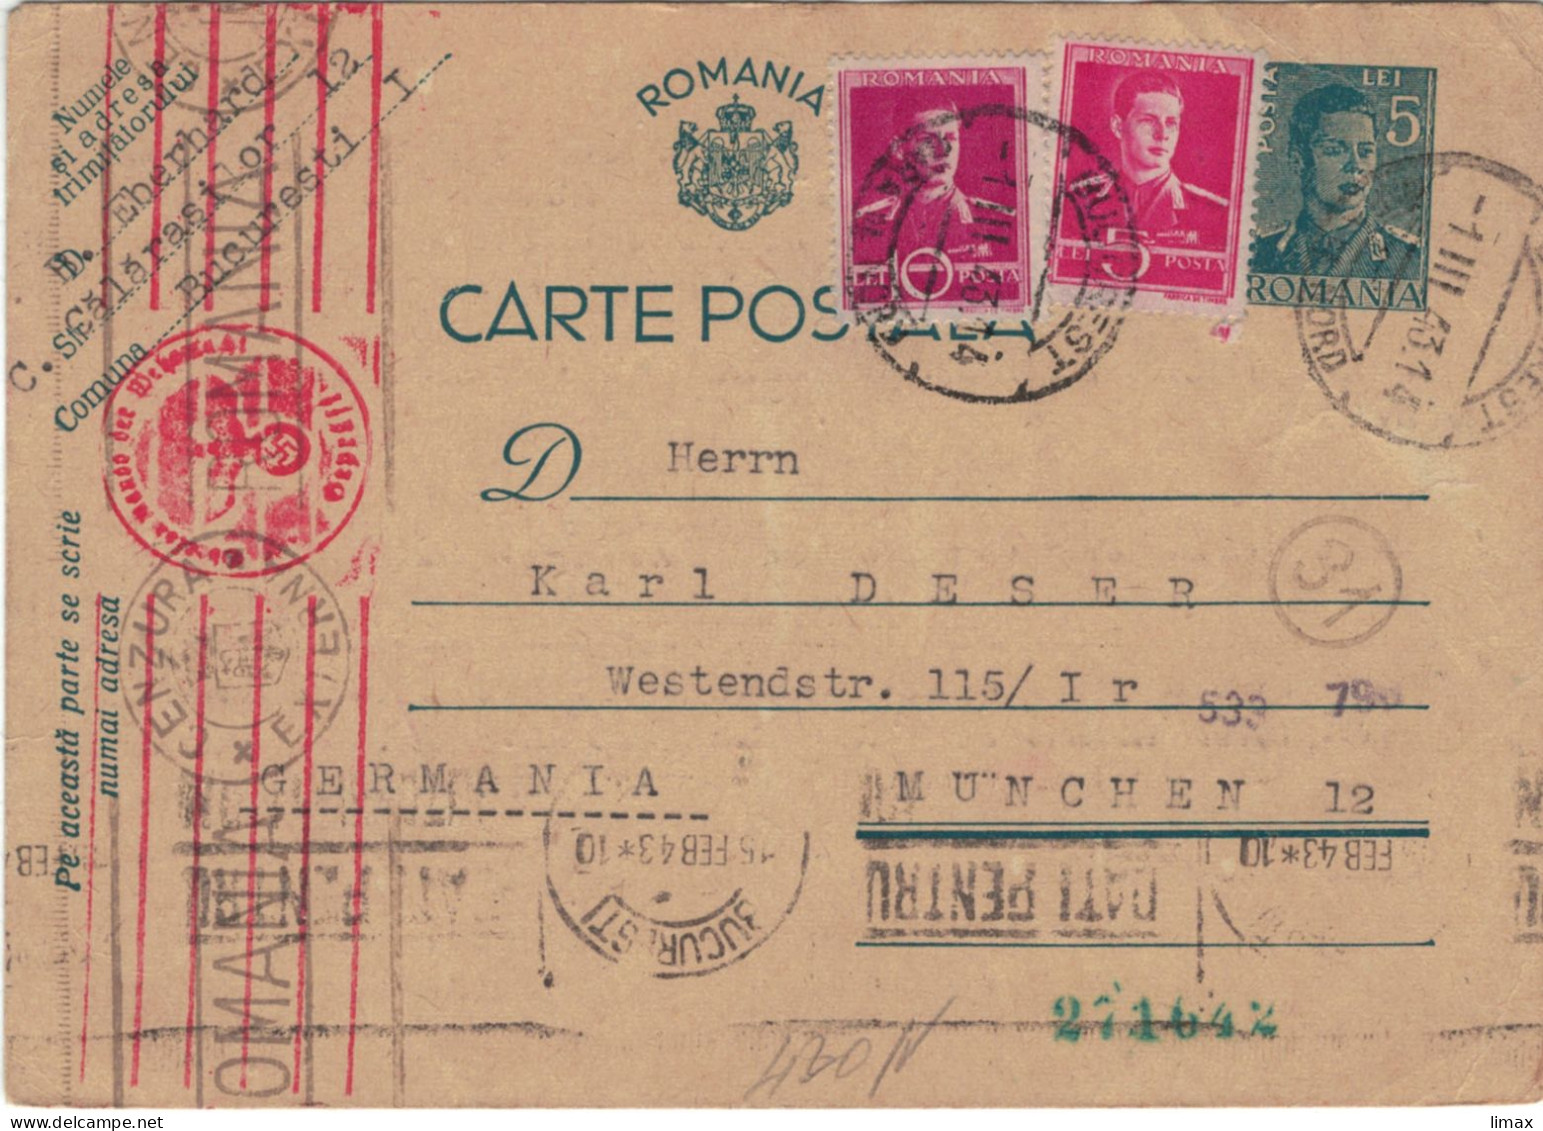 Ganzsache Bukarest 1.III.1943 > Karl Deser München - Zensur OKW Briefträgerstempel (31) - Briefe U. Dokumente